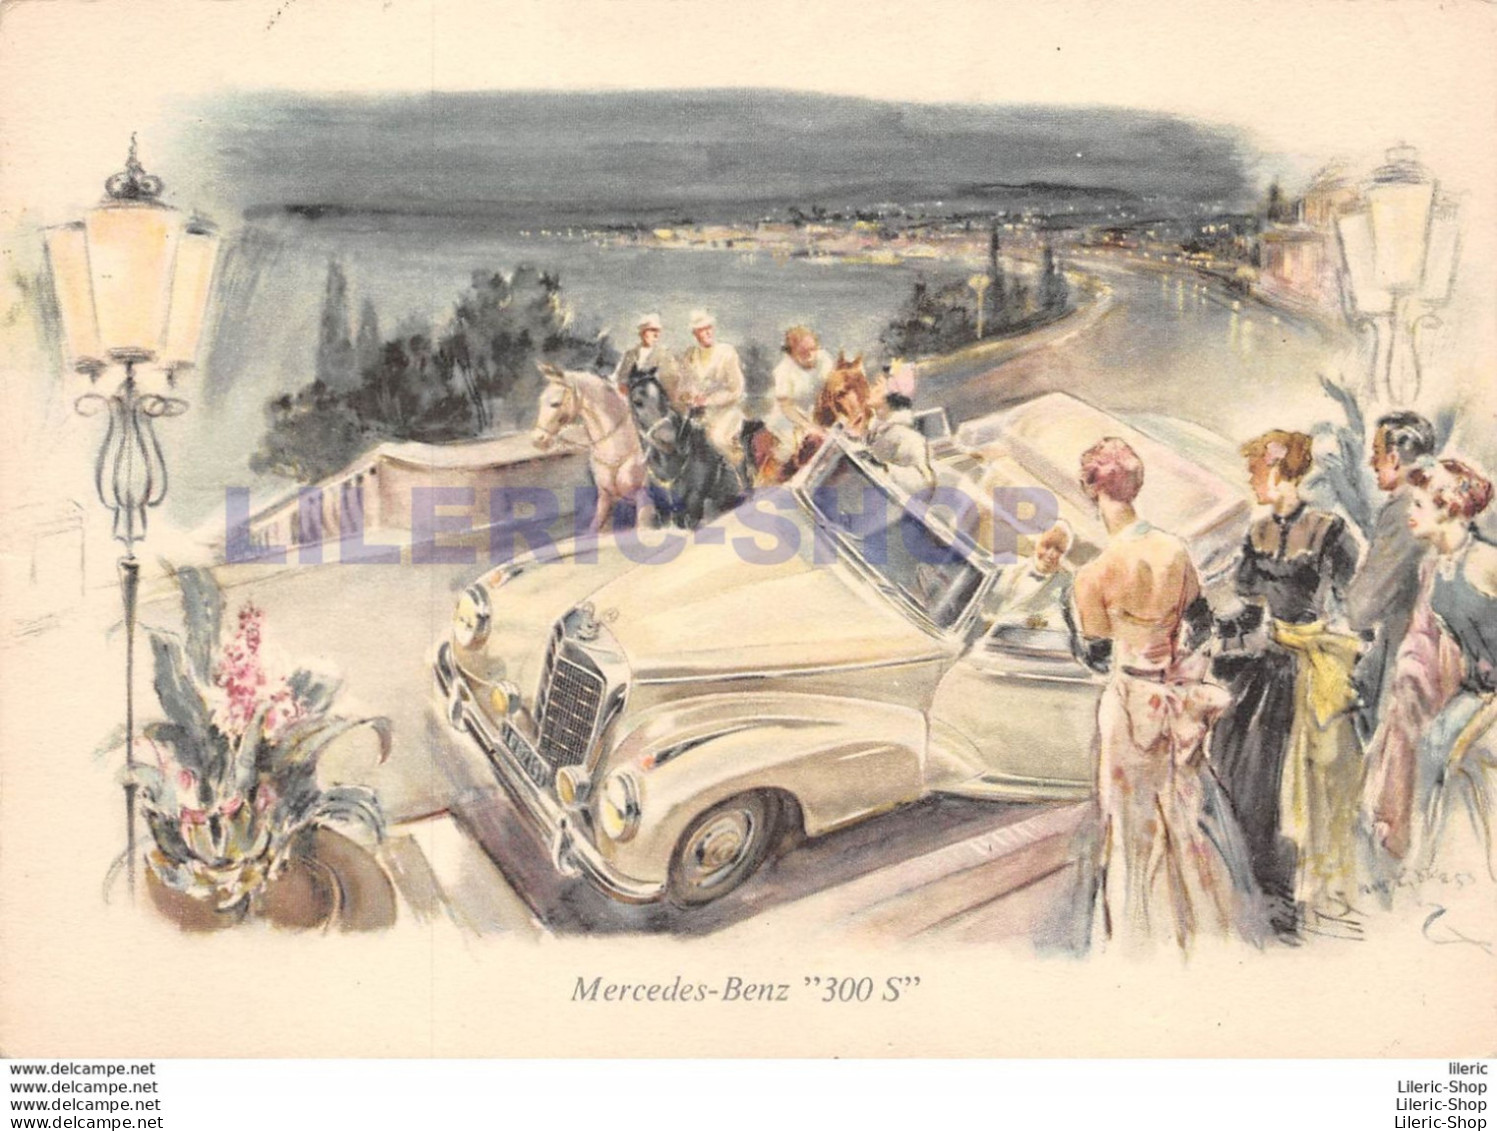 MERCEDES-BENZ  "300 S" ▬ DESSIN PAR HANS LISKA PUBLICISTE AUTOMOBILE 1950 ± - Voitures De Tourisme